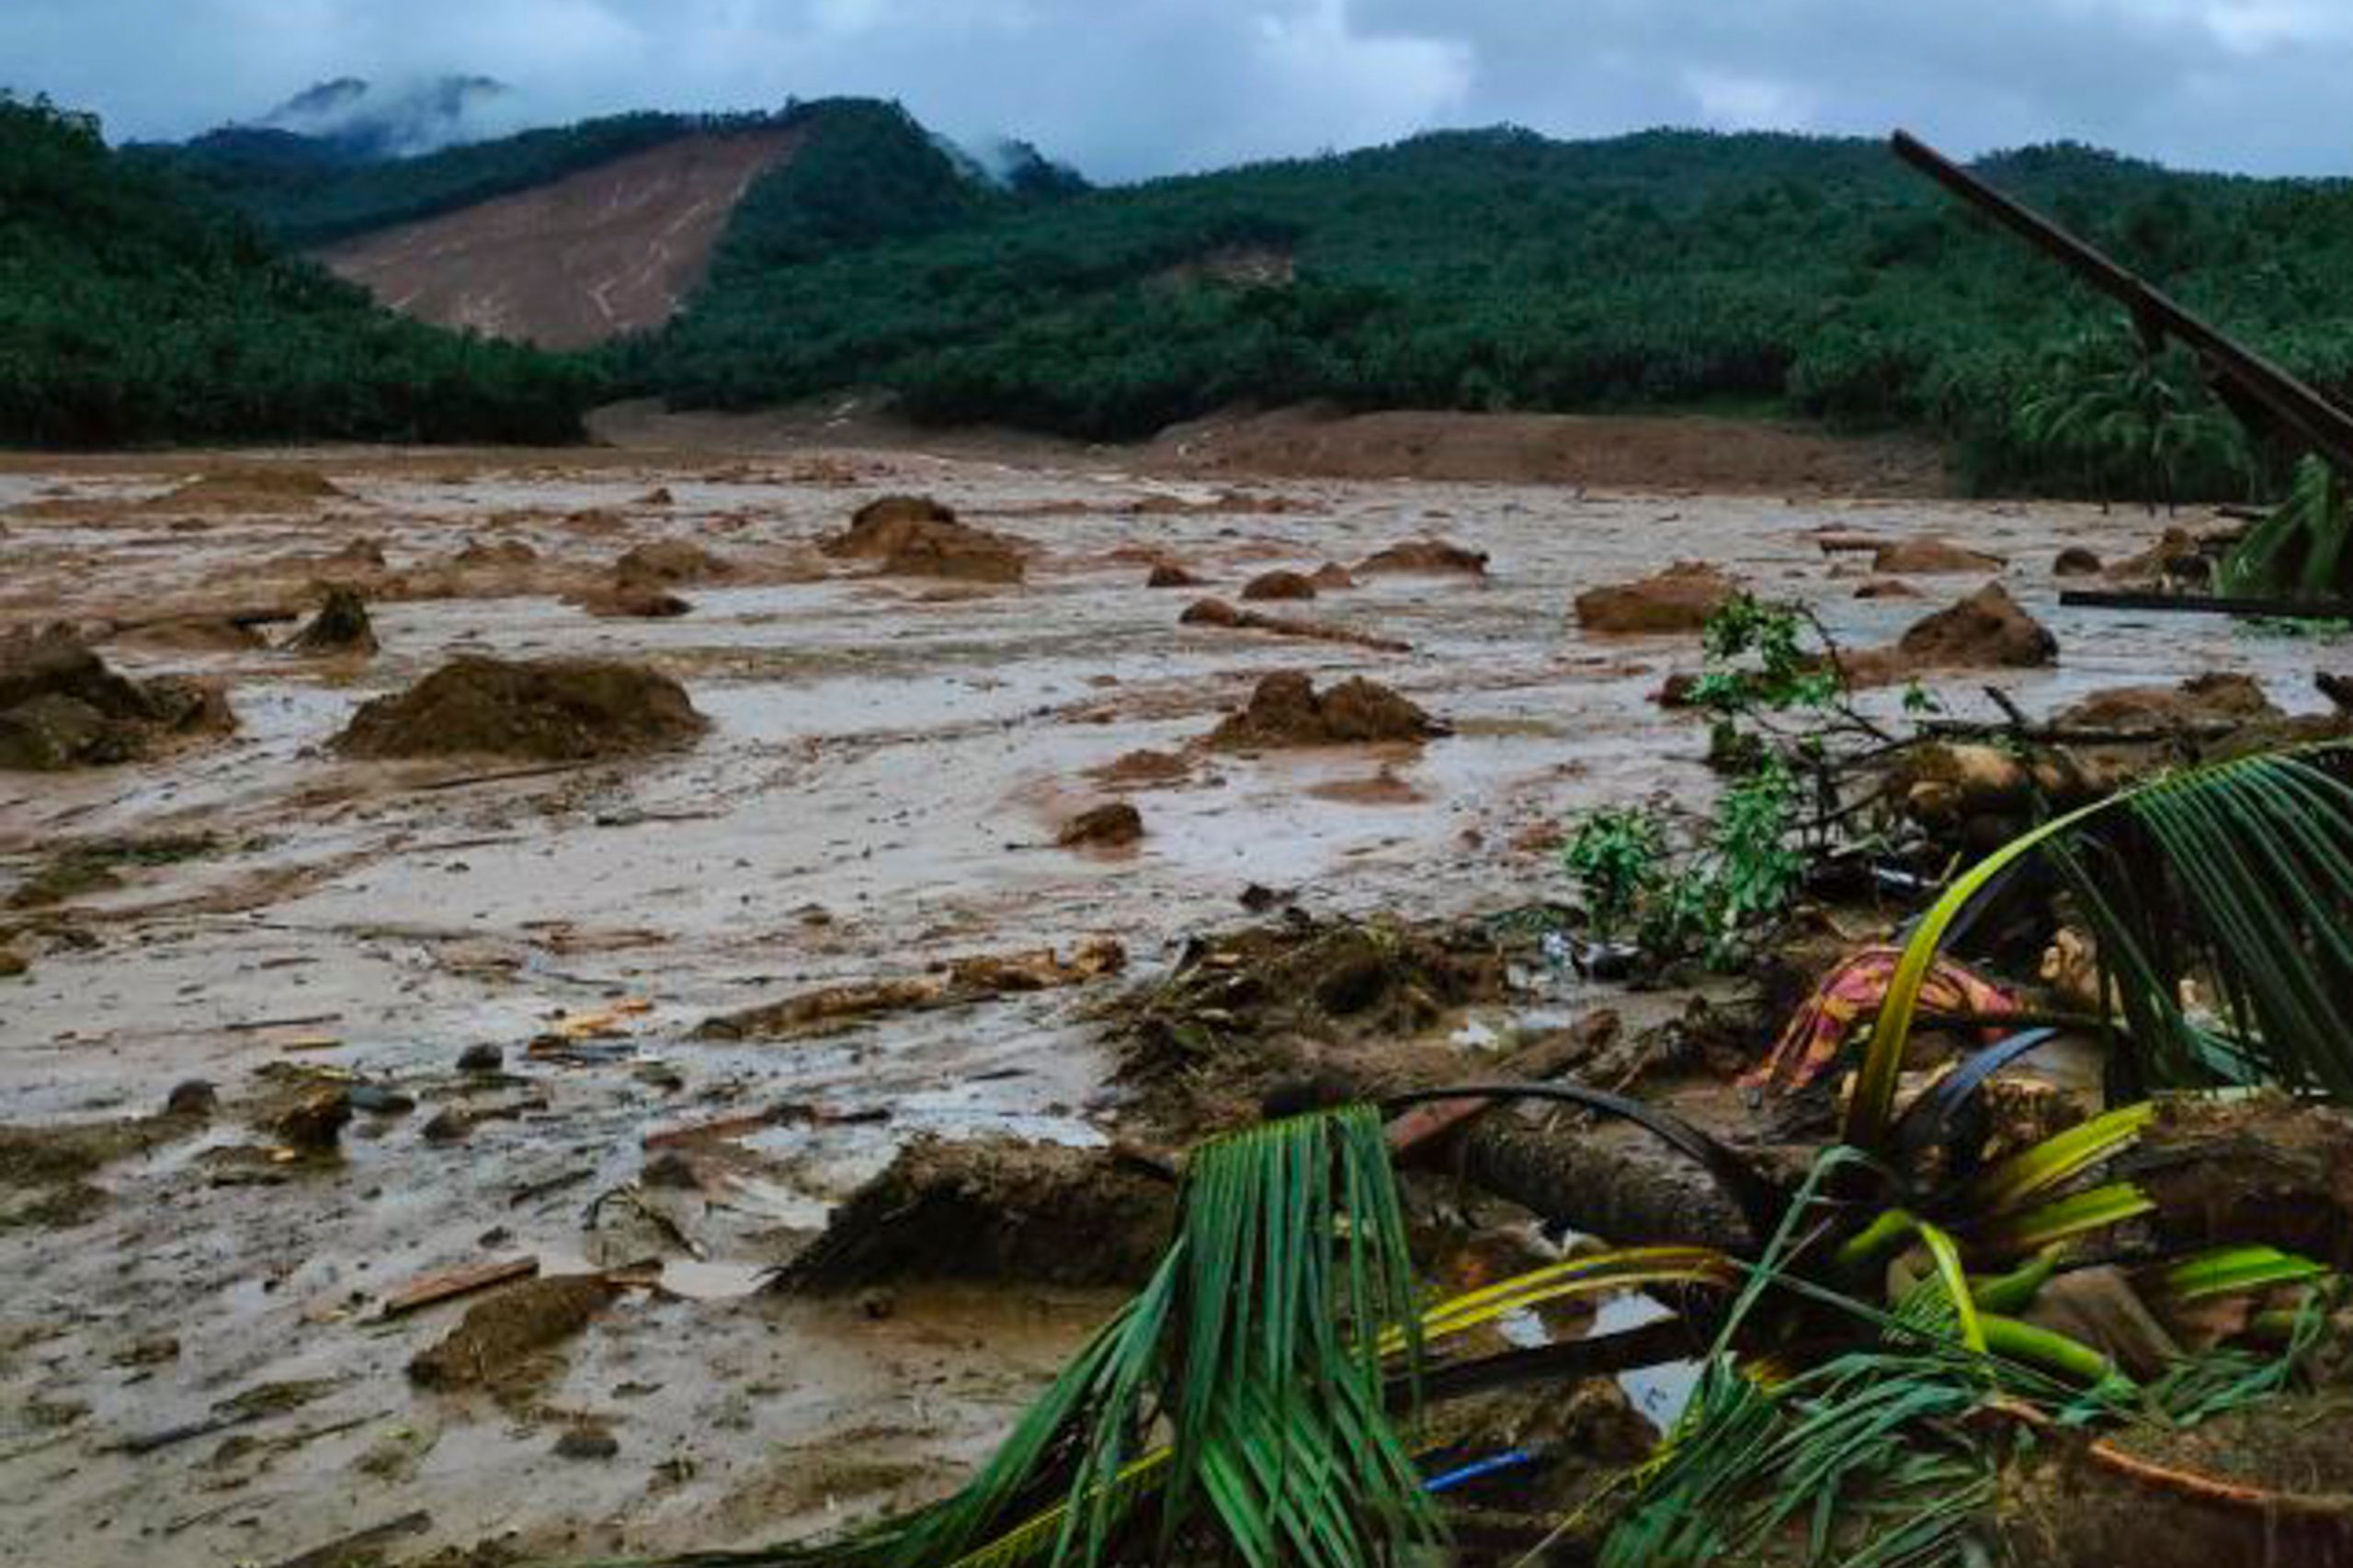 Philippines boy survives landslide by taking refuge in refrigerator for 20 hours